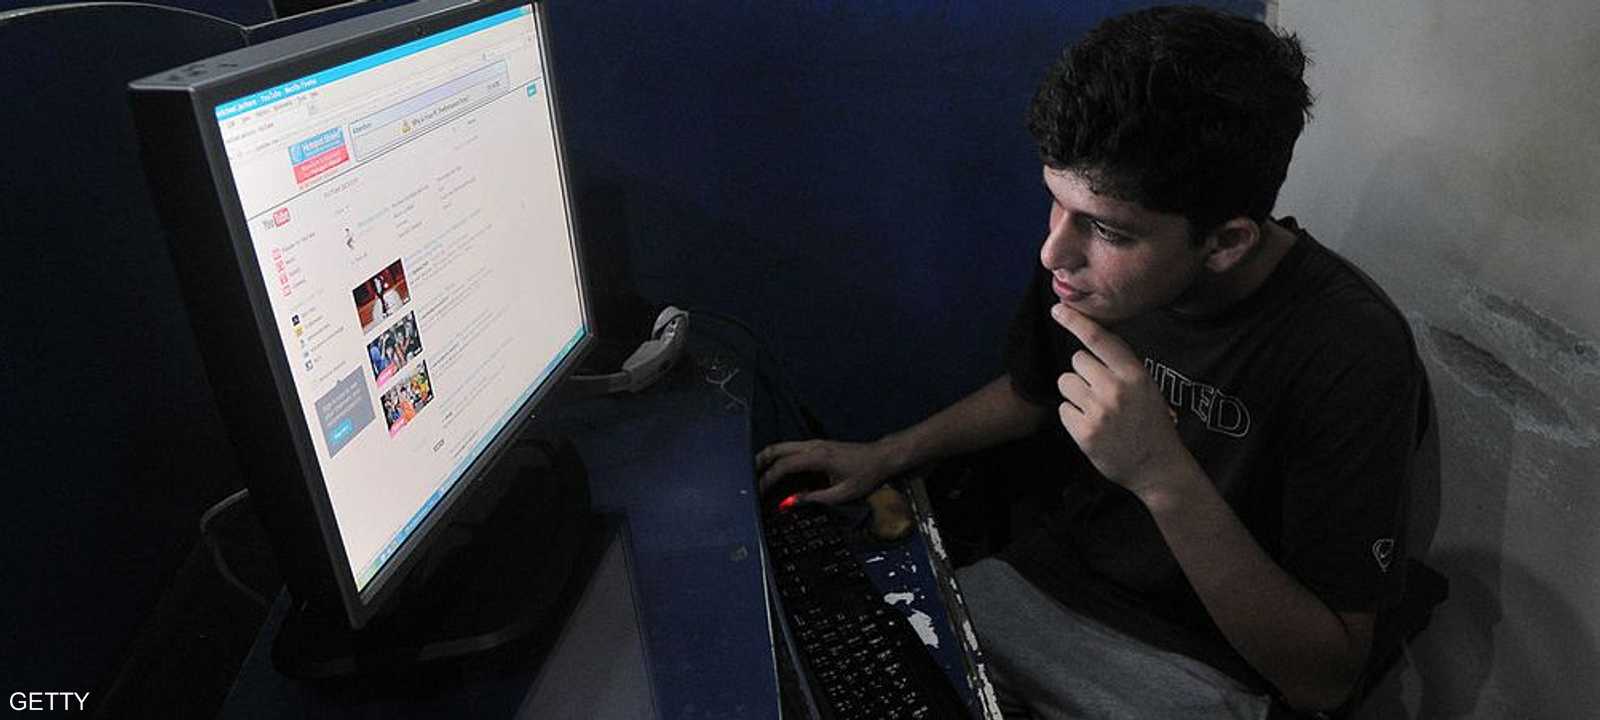 شاب باكستاني في مقهى إنترنت.